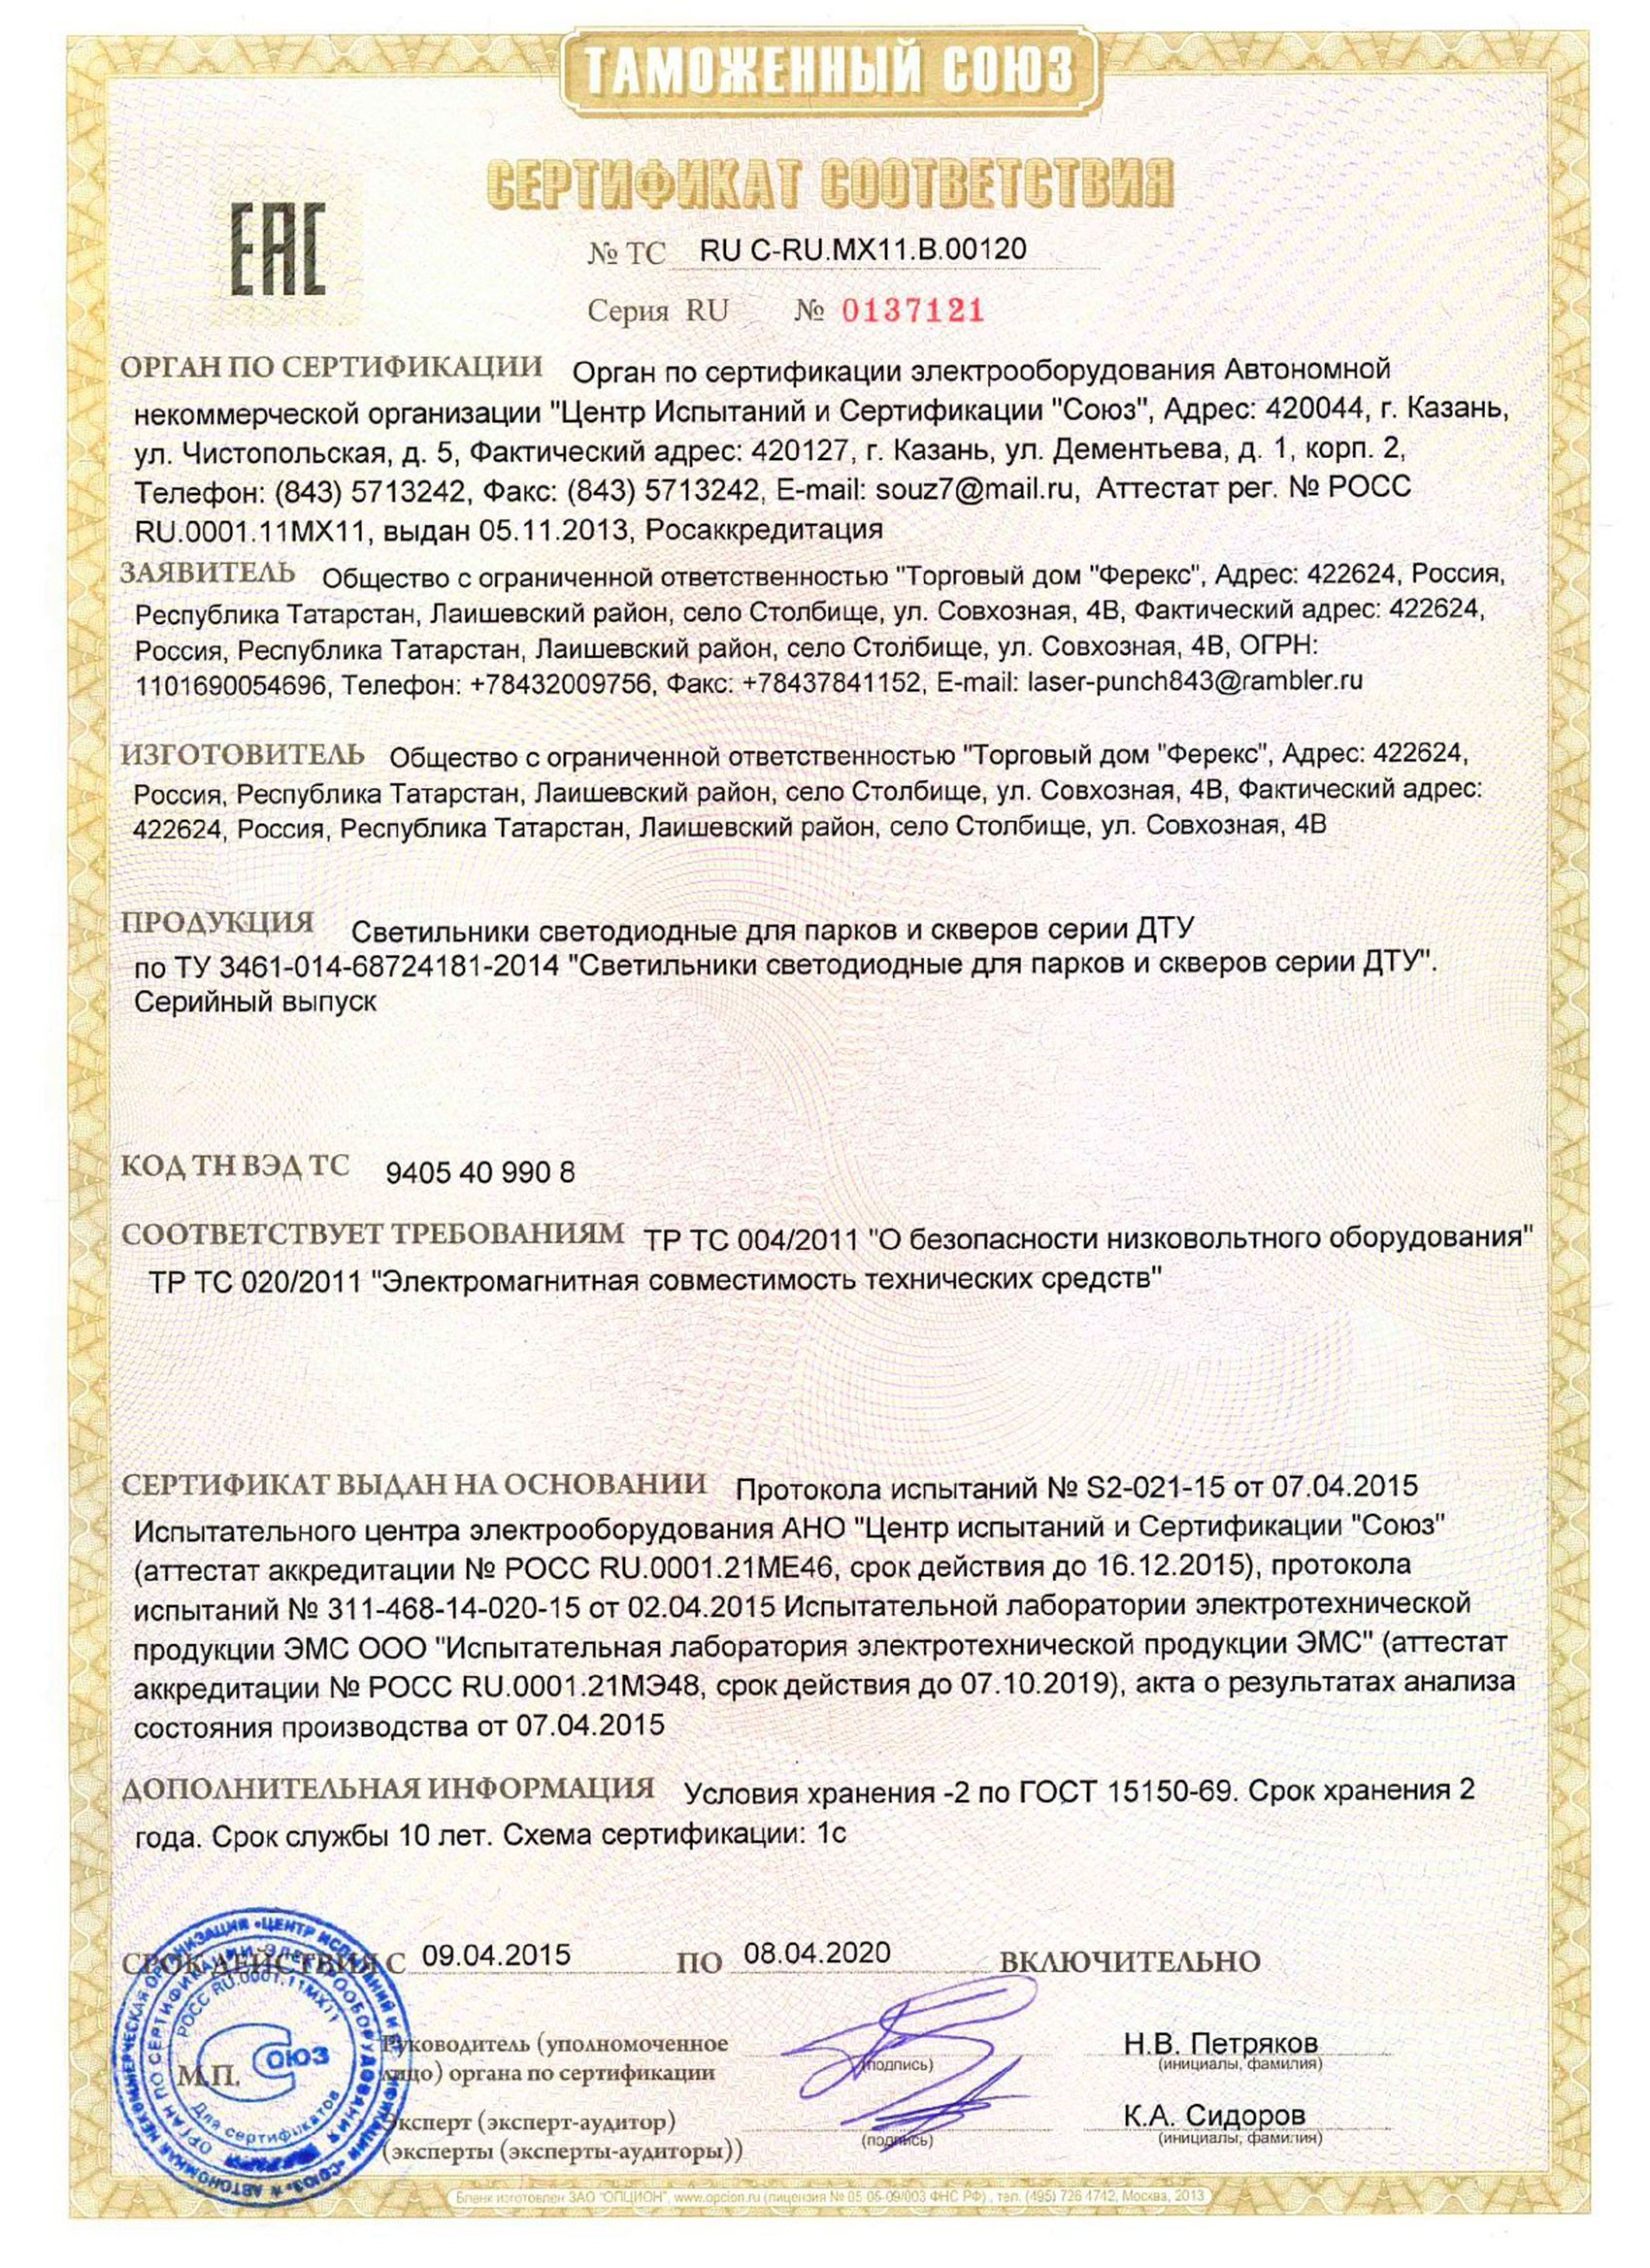 Сертификат таможенного союза на светильник ДТУ